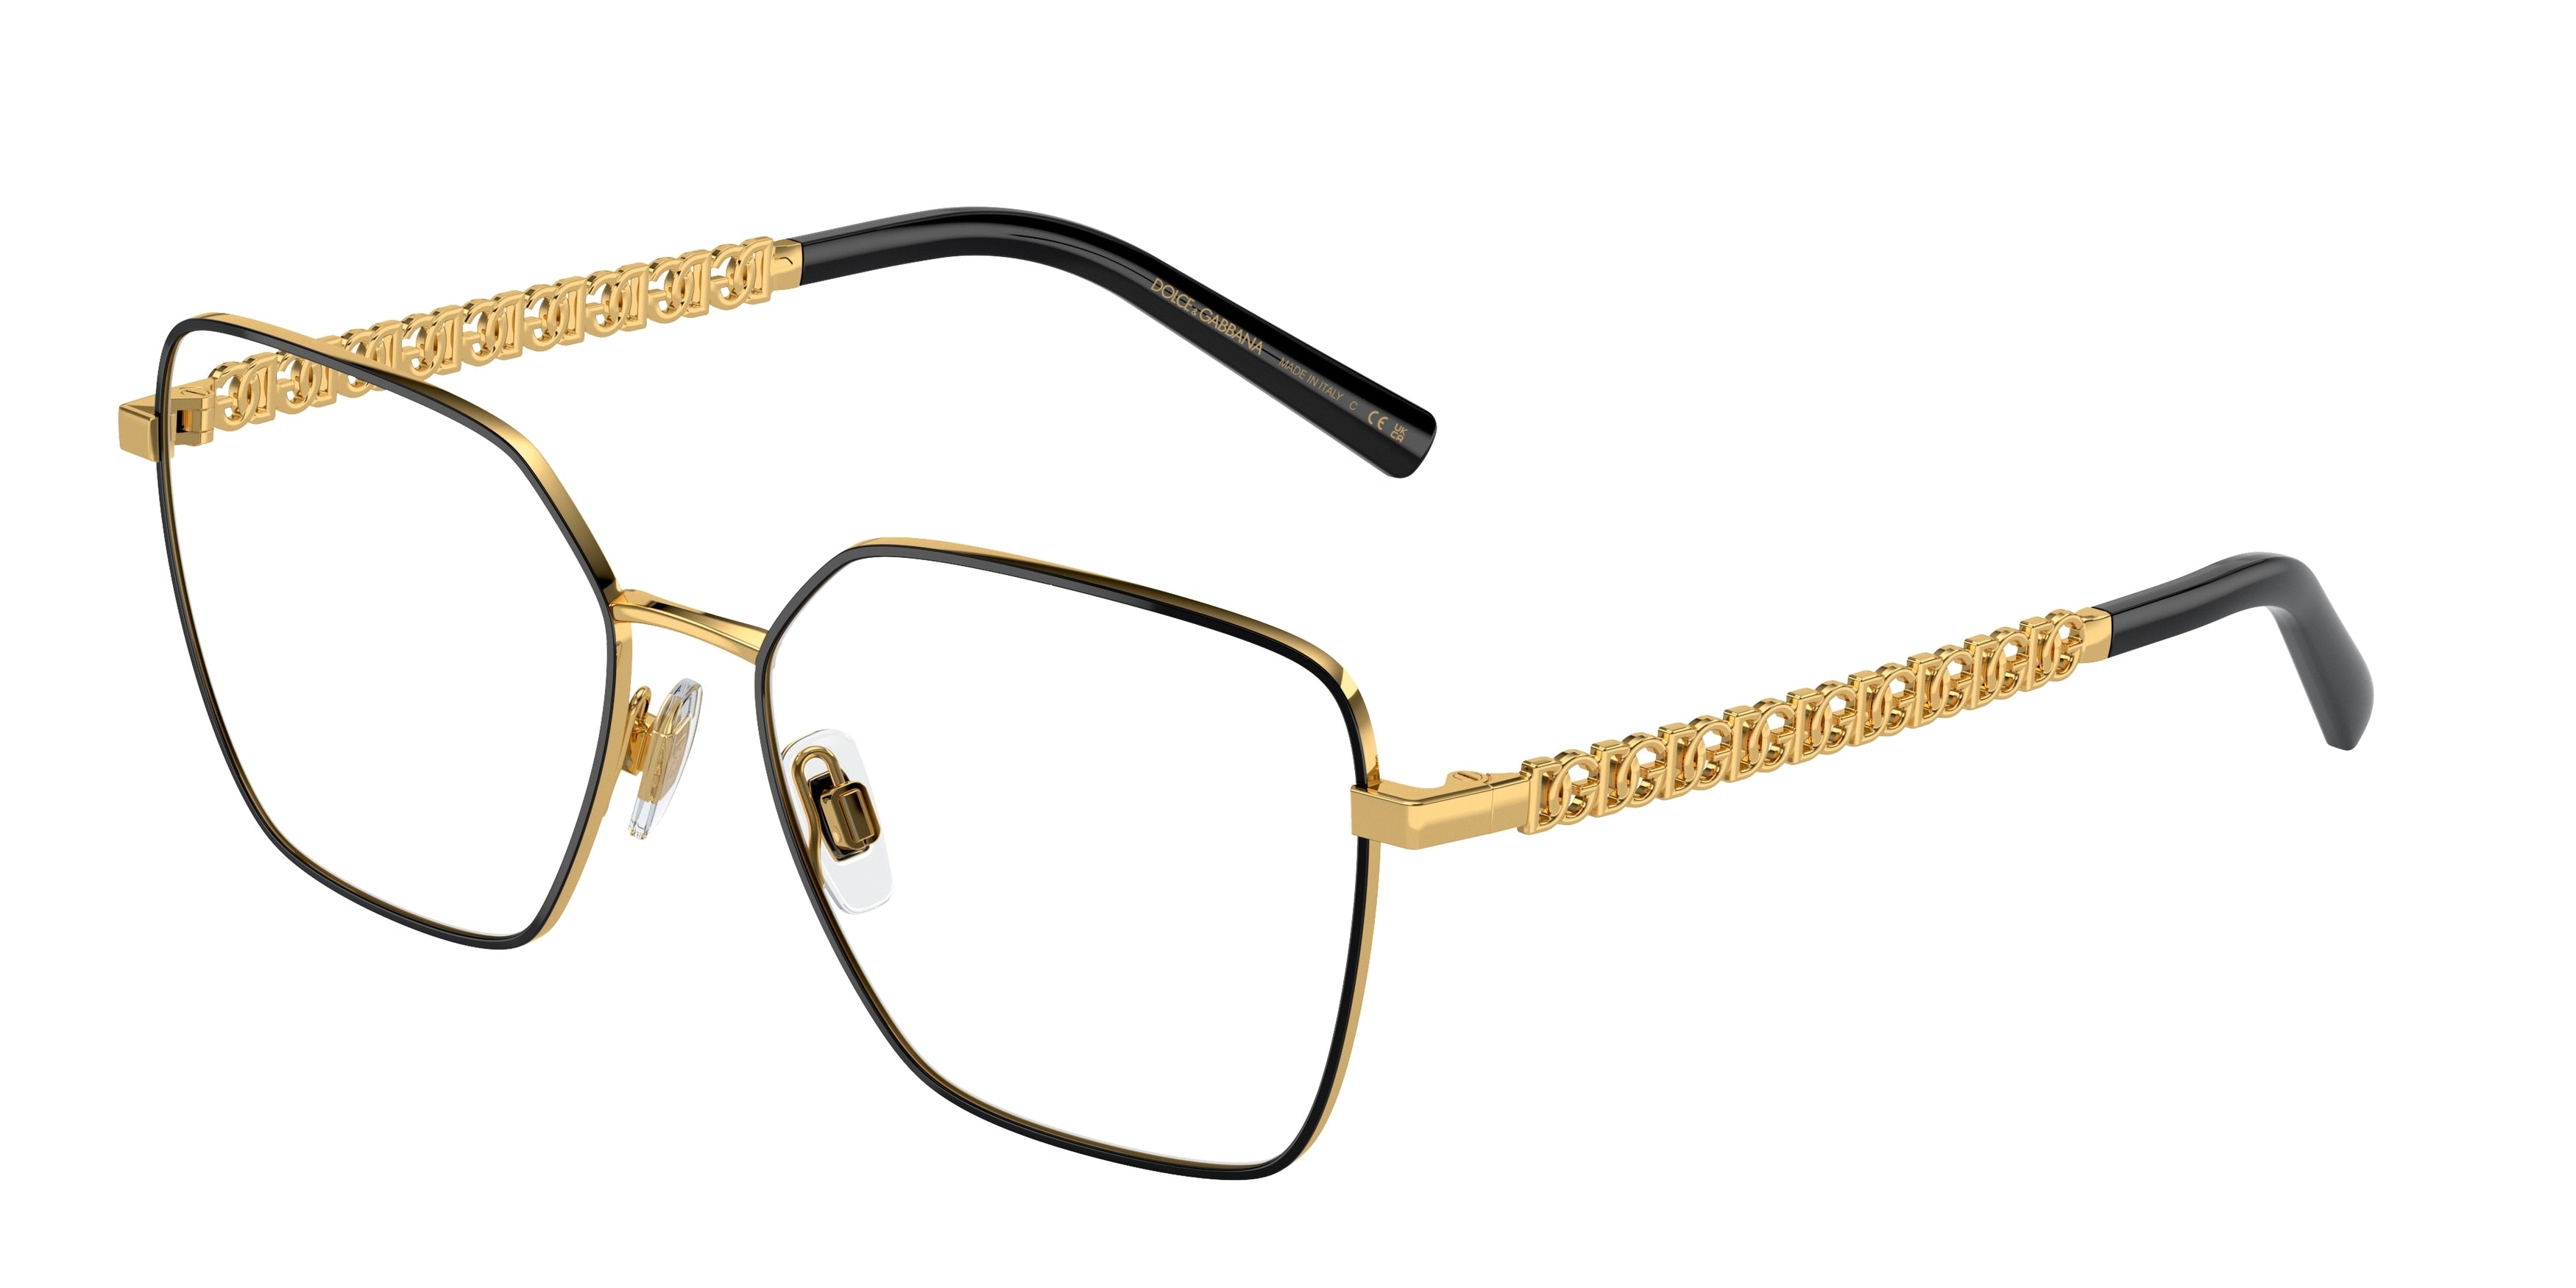 DOLCE & GABBANA DG1351 Square Eyeglasses  1334-Gold/Black 56-140-15 - Color Map Black